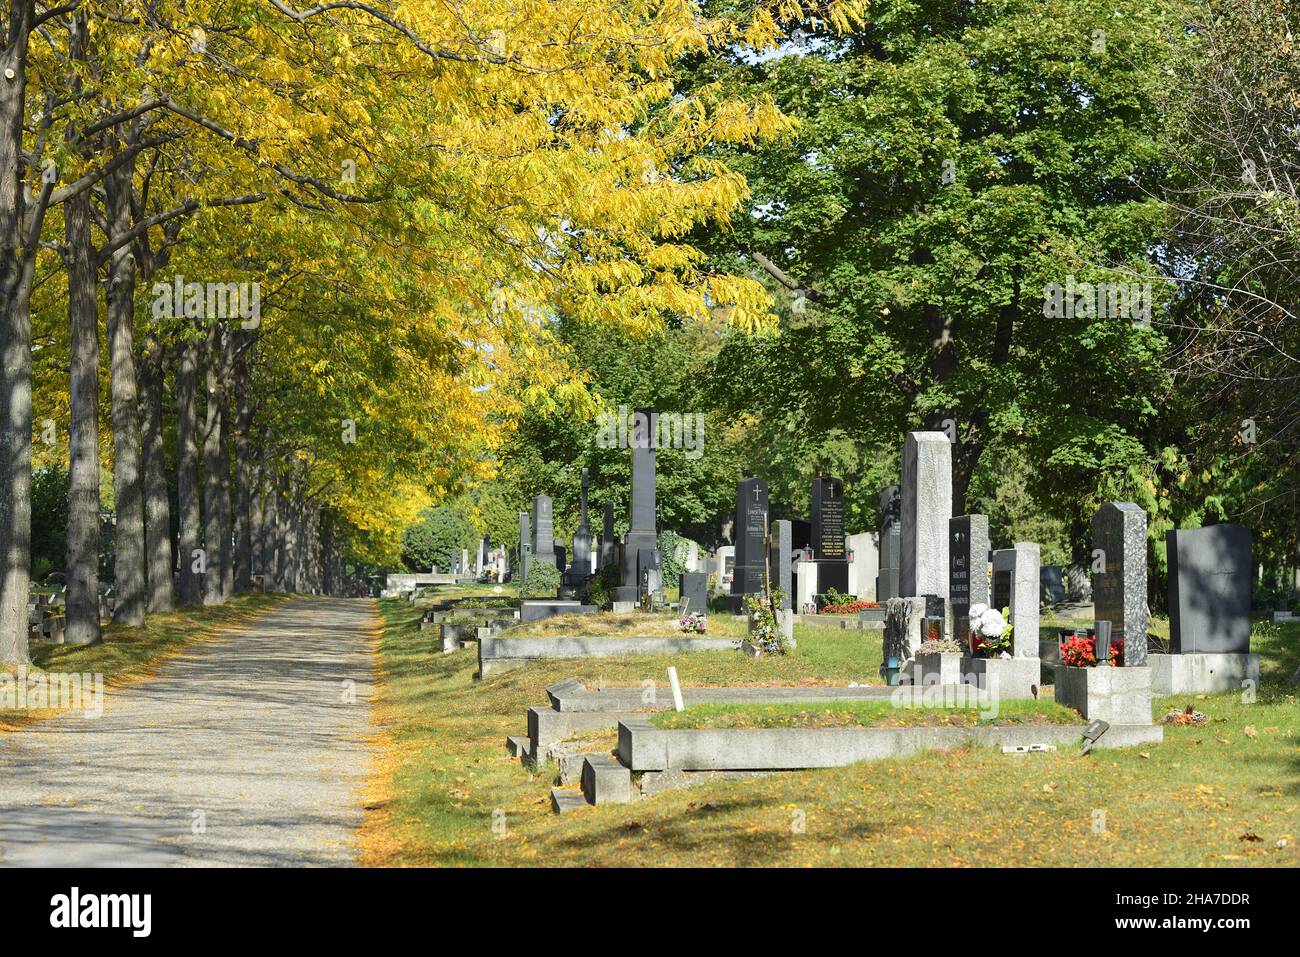 Vienne, Autriche. Le cimetière central de Vienne. Les lieux de sépulture au cimetière central. Ambiance d'automne au cimetière central Banque D'Images